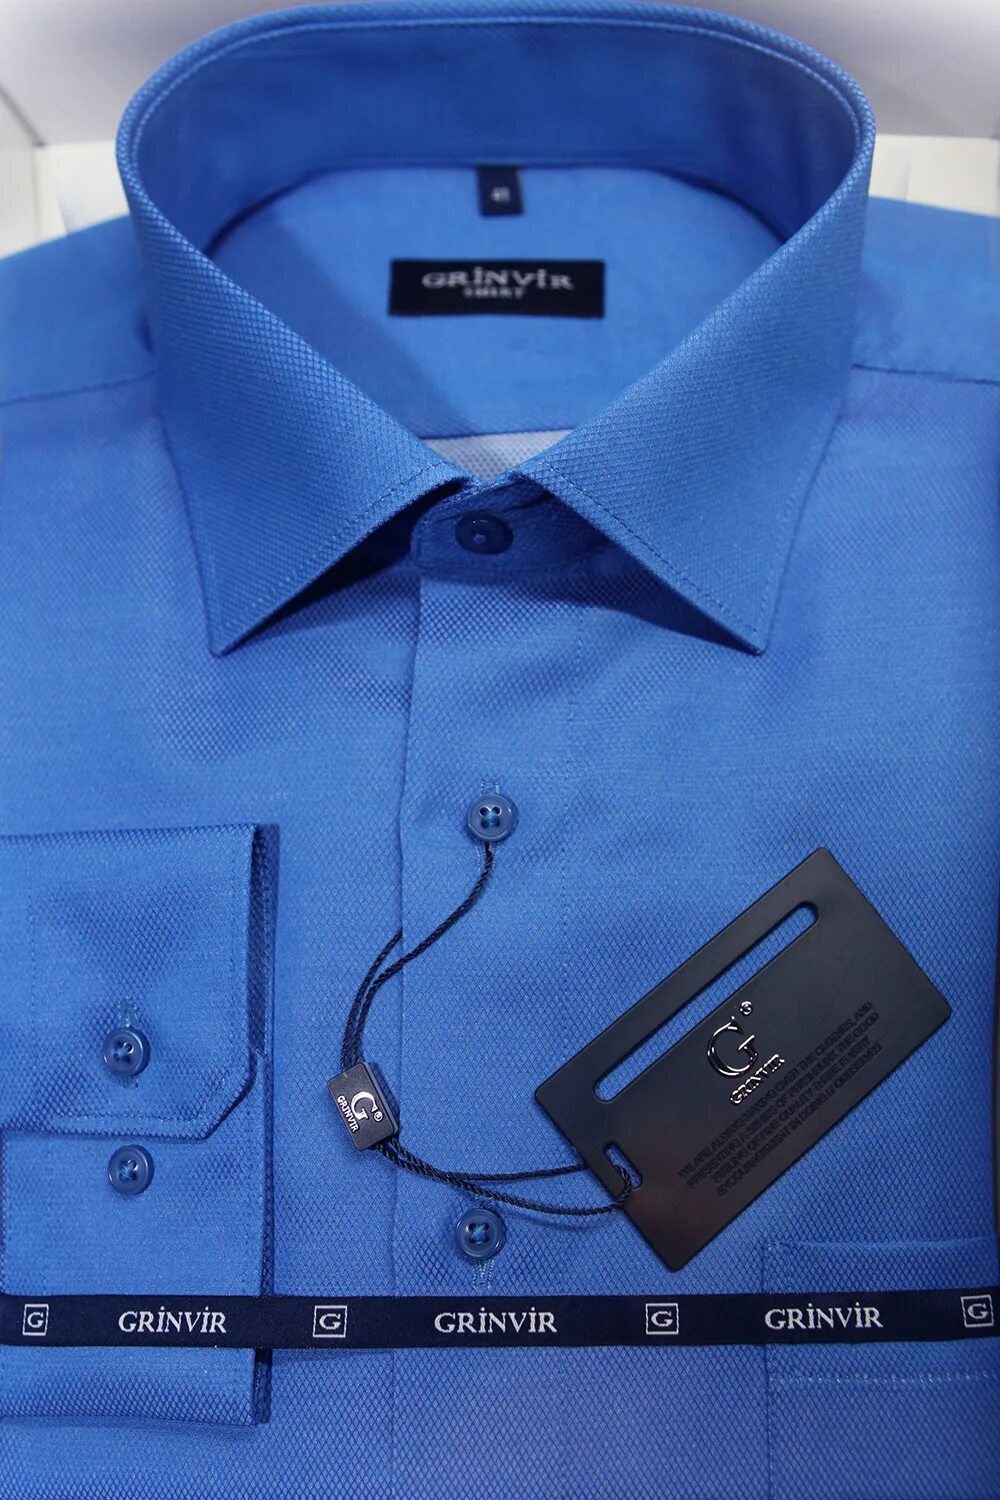 Мужские рубашки производство. Рубашка синяя мужская классическая. Weemgcal Original рубашка производитель. Рубашка Walbusch Easycare. Магнат синий.